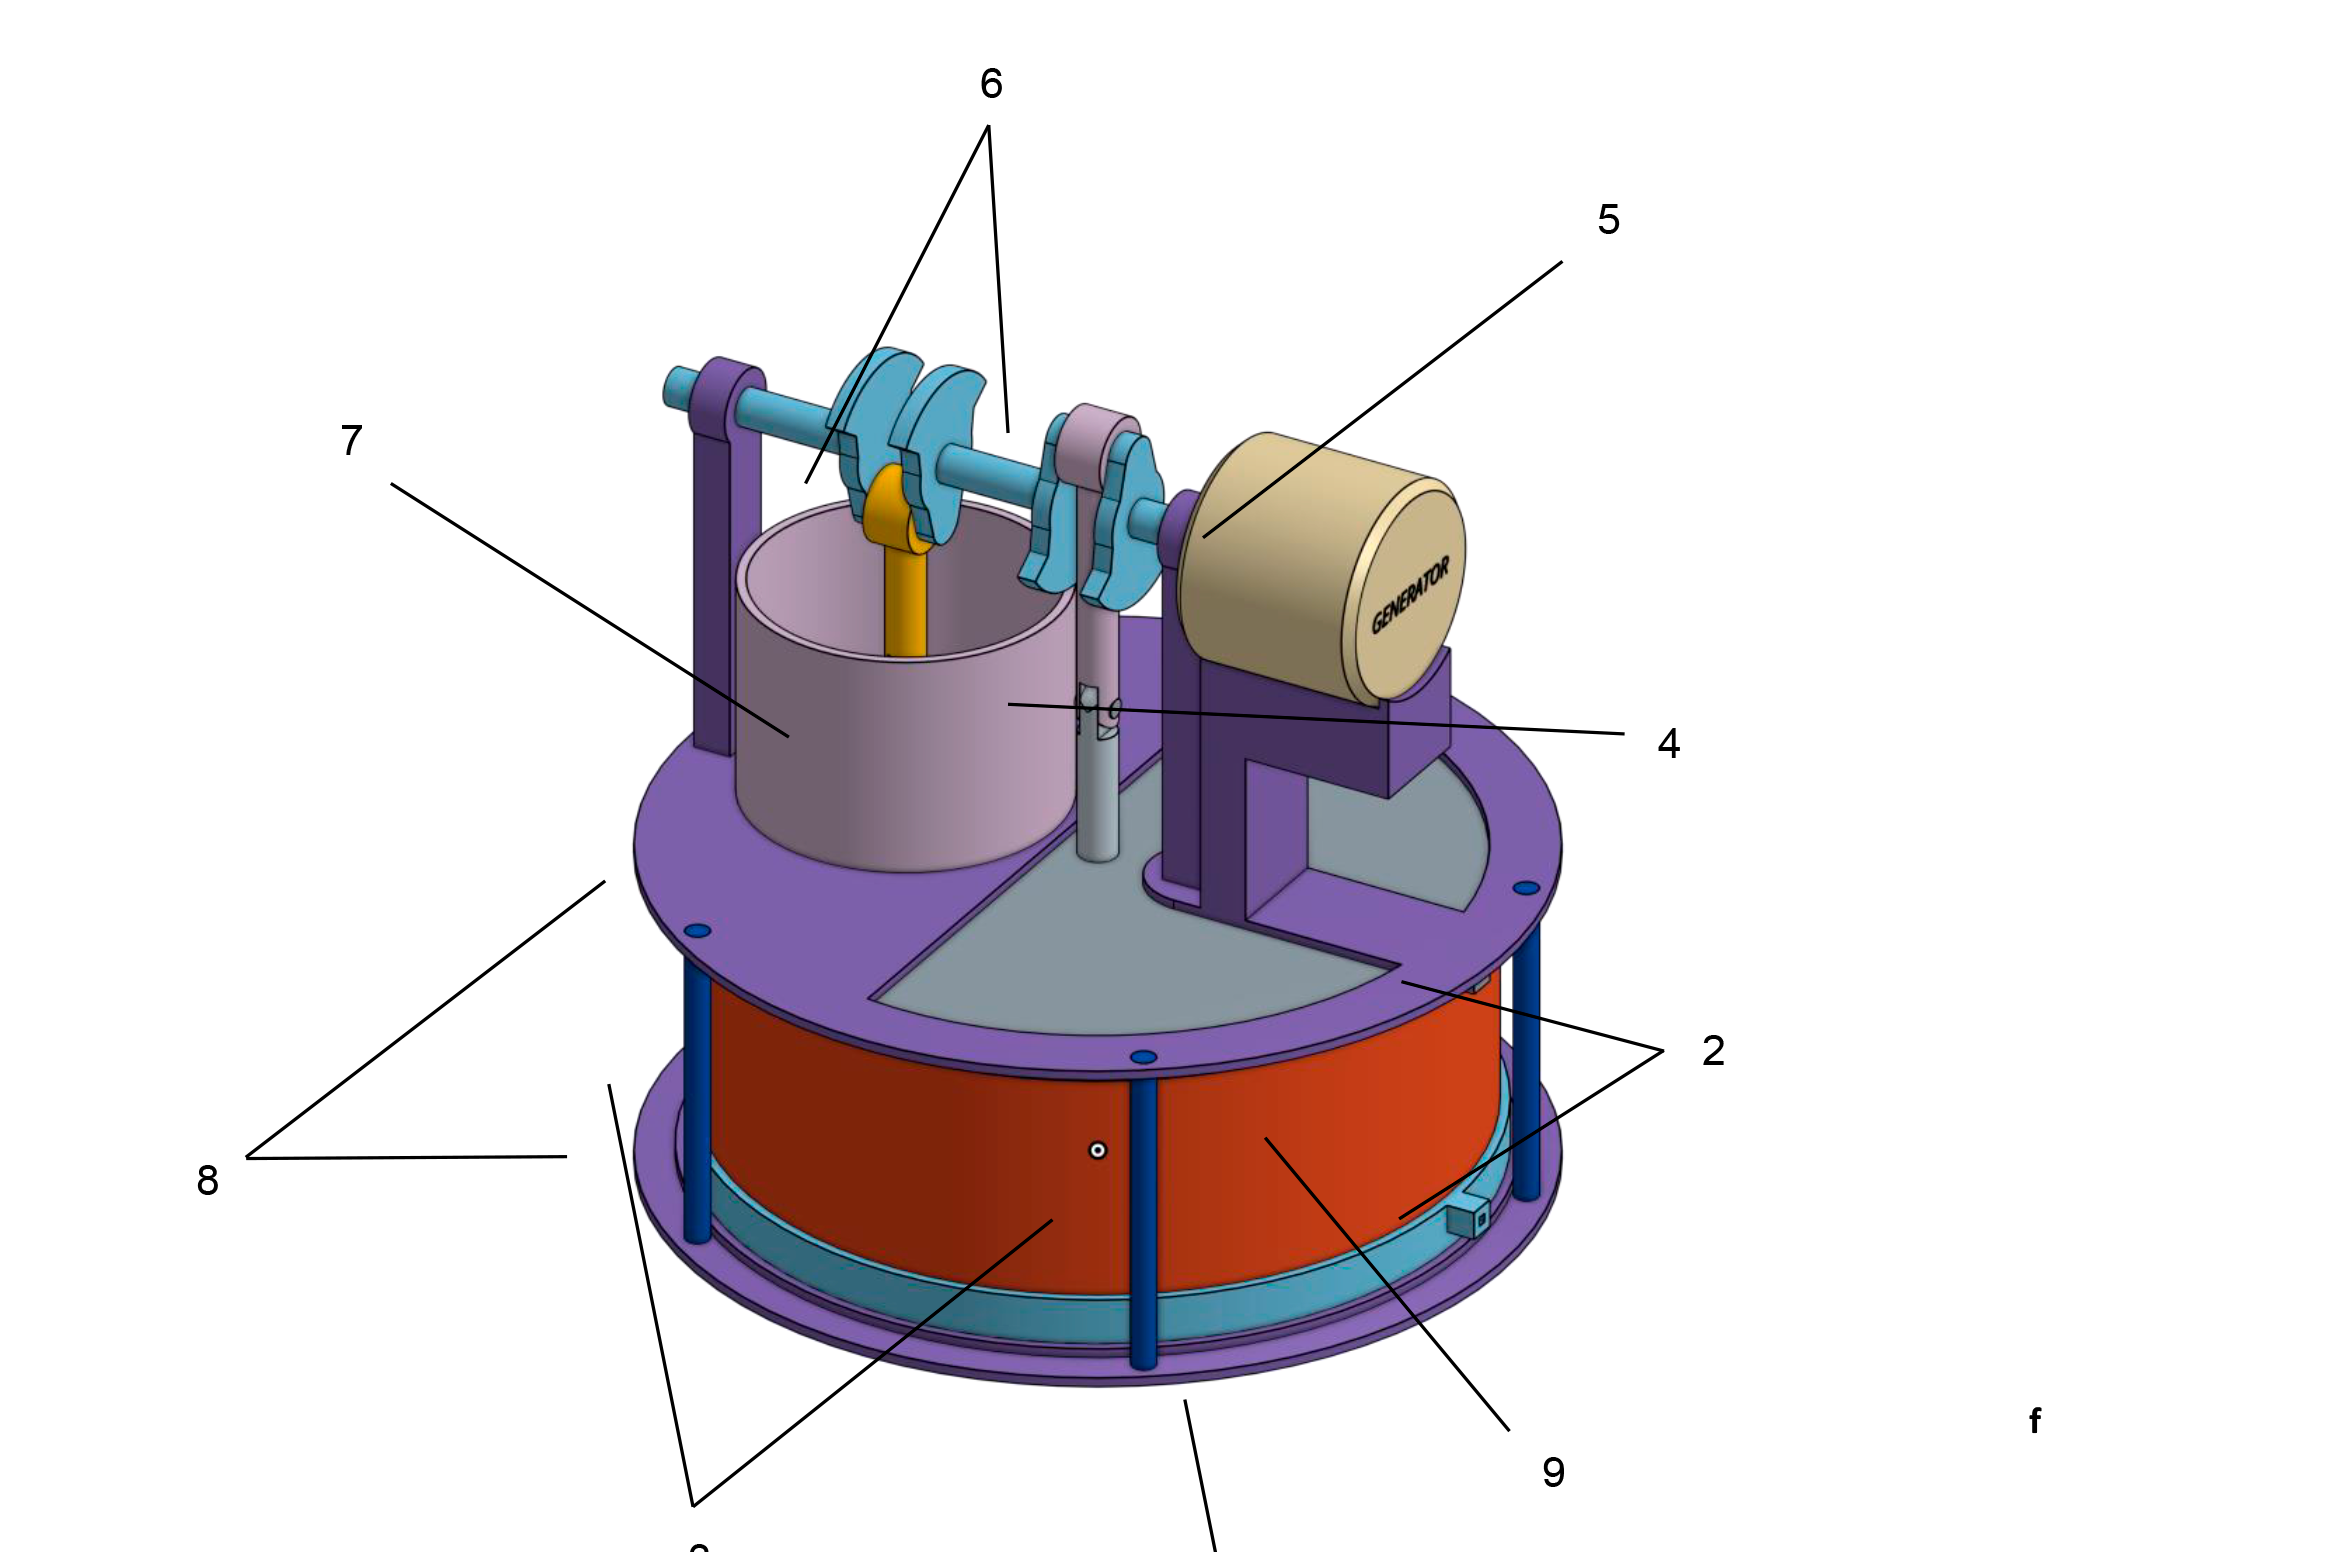 Imagem mostra desenho do motor stirling desenvolvido pelo pesquisador Fabiano Stingelin Cardoso